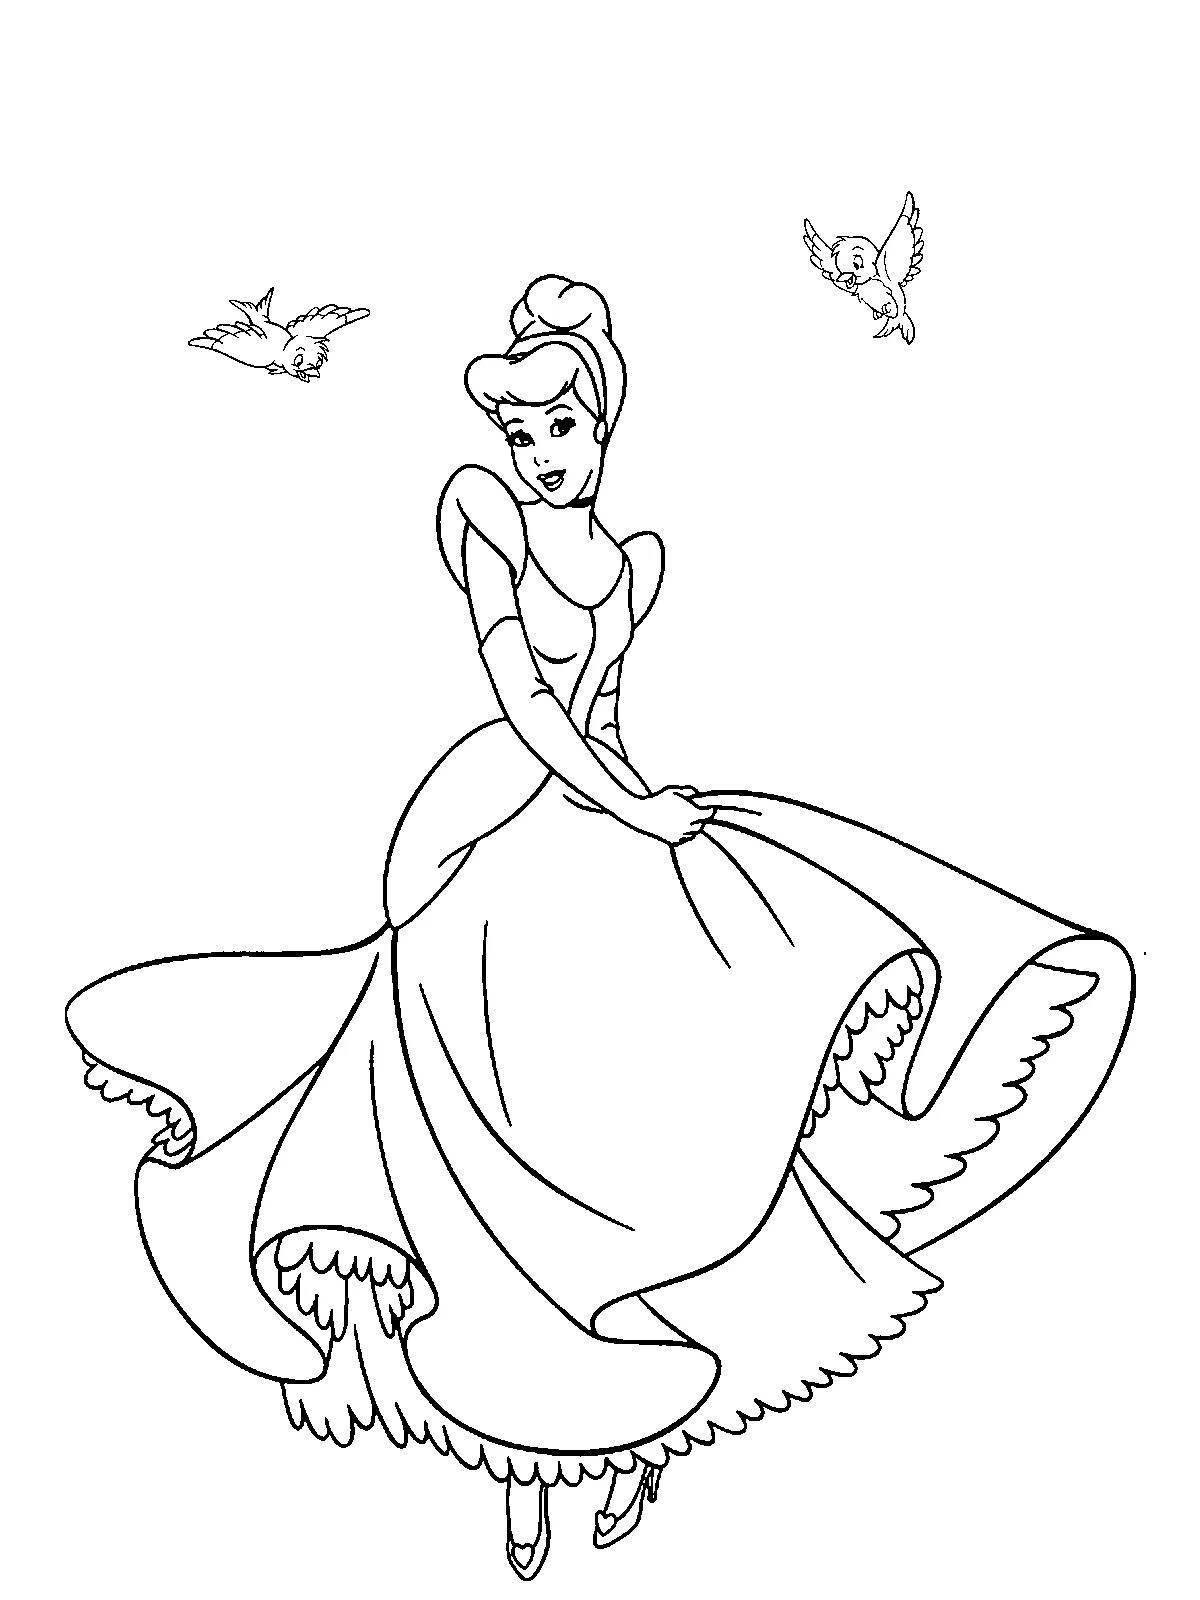 Amazing Cinderella coloring book